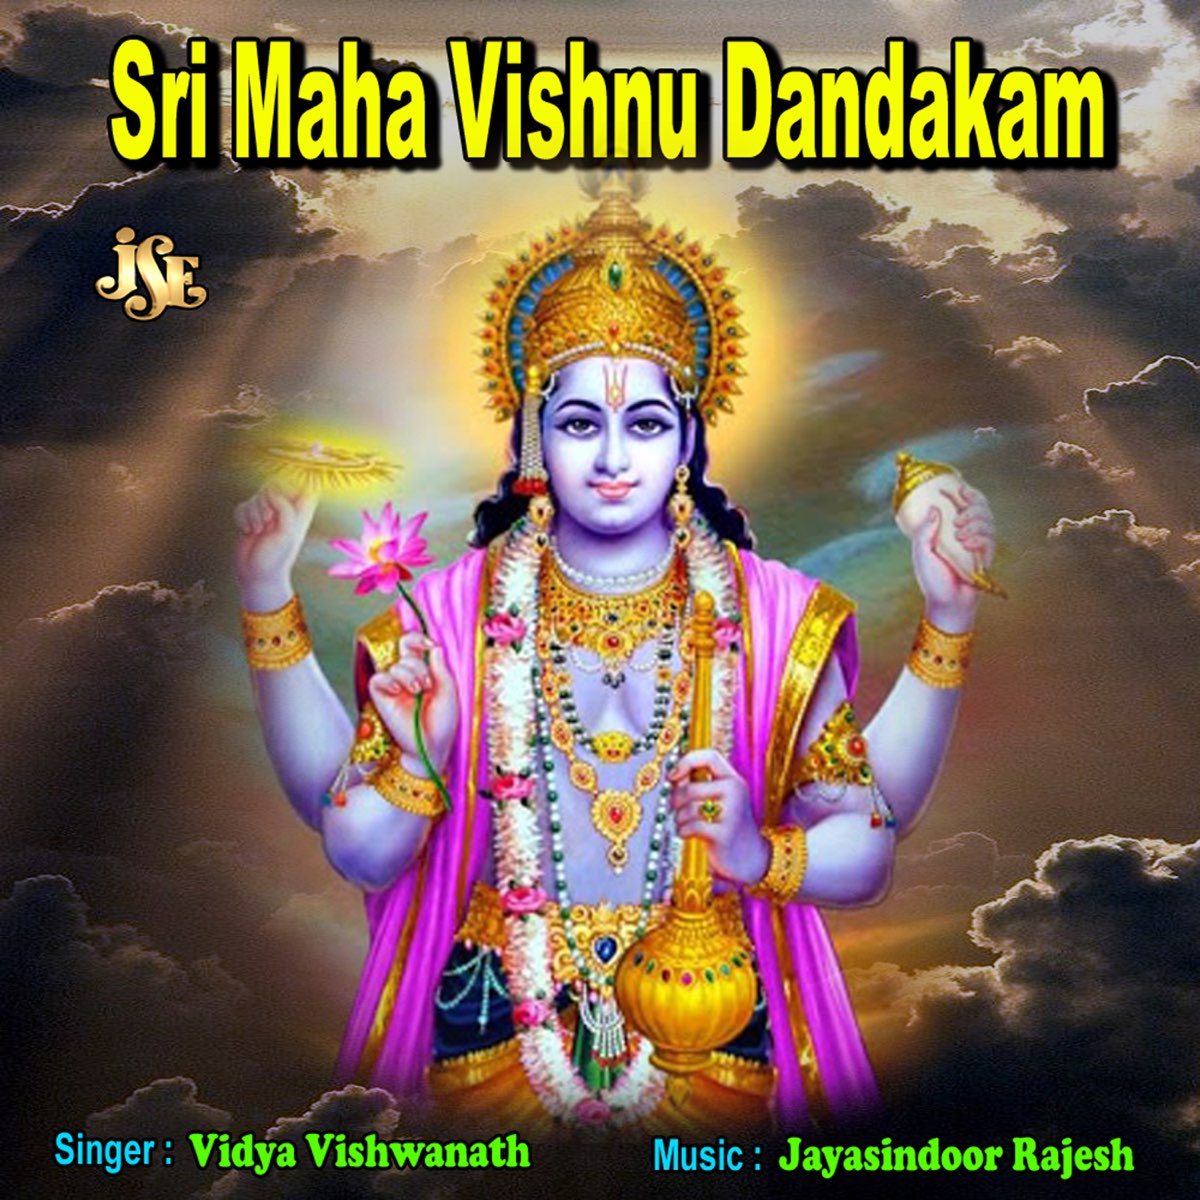 Sri Maha Vishnu Dandakam - Single by Vidya Vishwanath on Apple Music